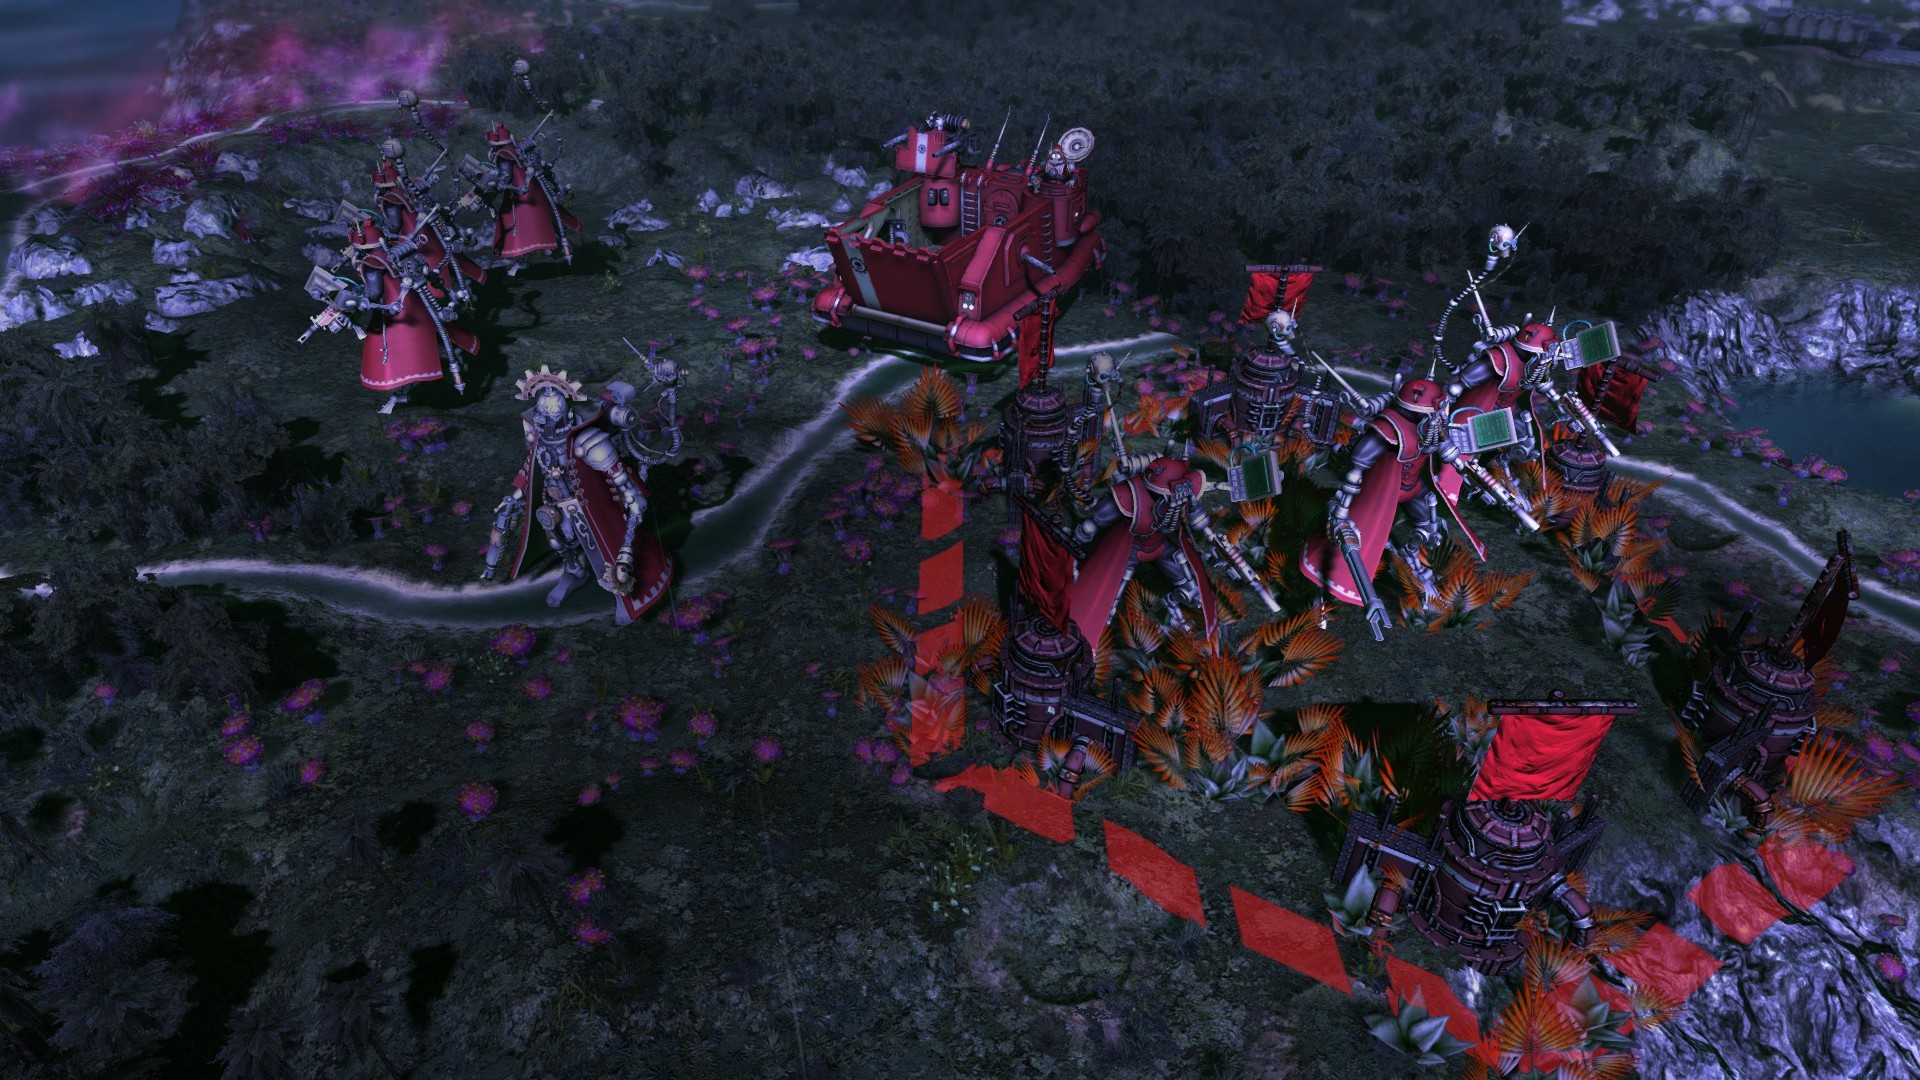 Warhammer 40,000: Gladius - T'au on Steam